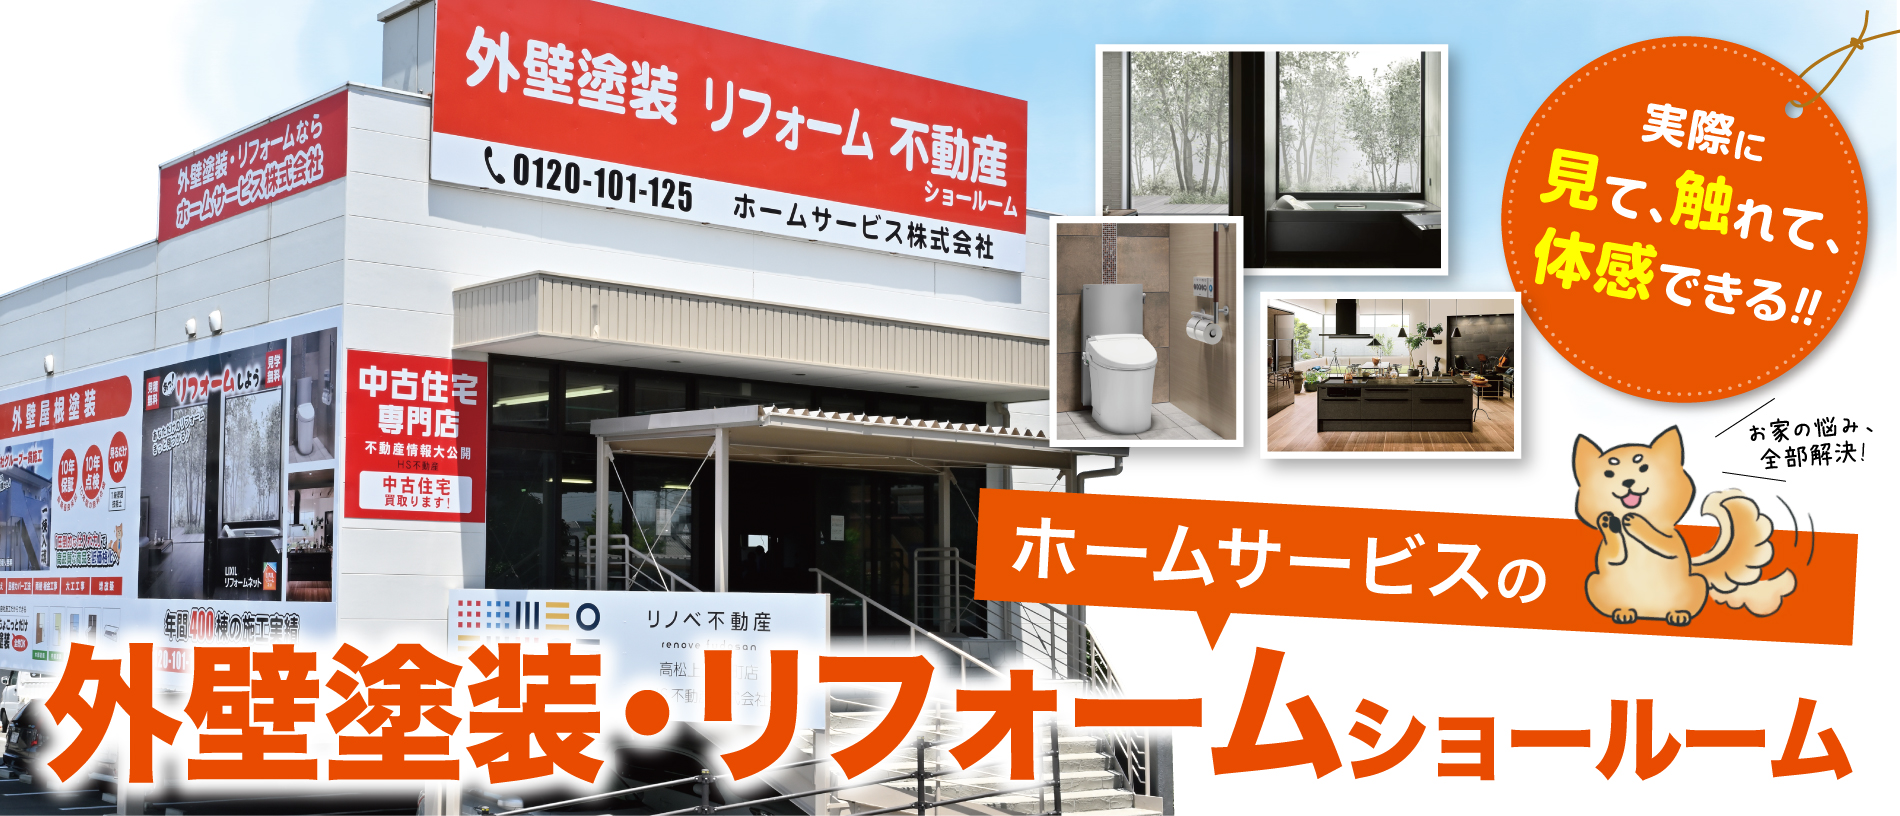 香川県の外壁塗装、屋根塗装、リフォームはホームサービス株式会社にお任せ！香川県下最大級のショールームオープン